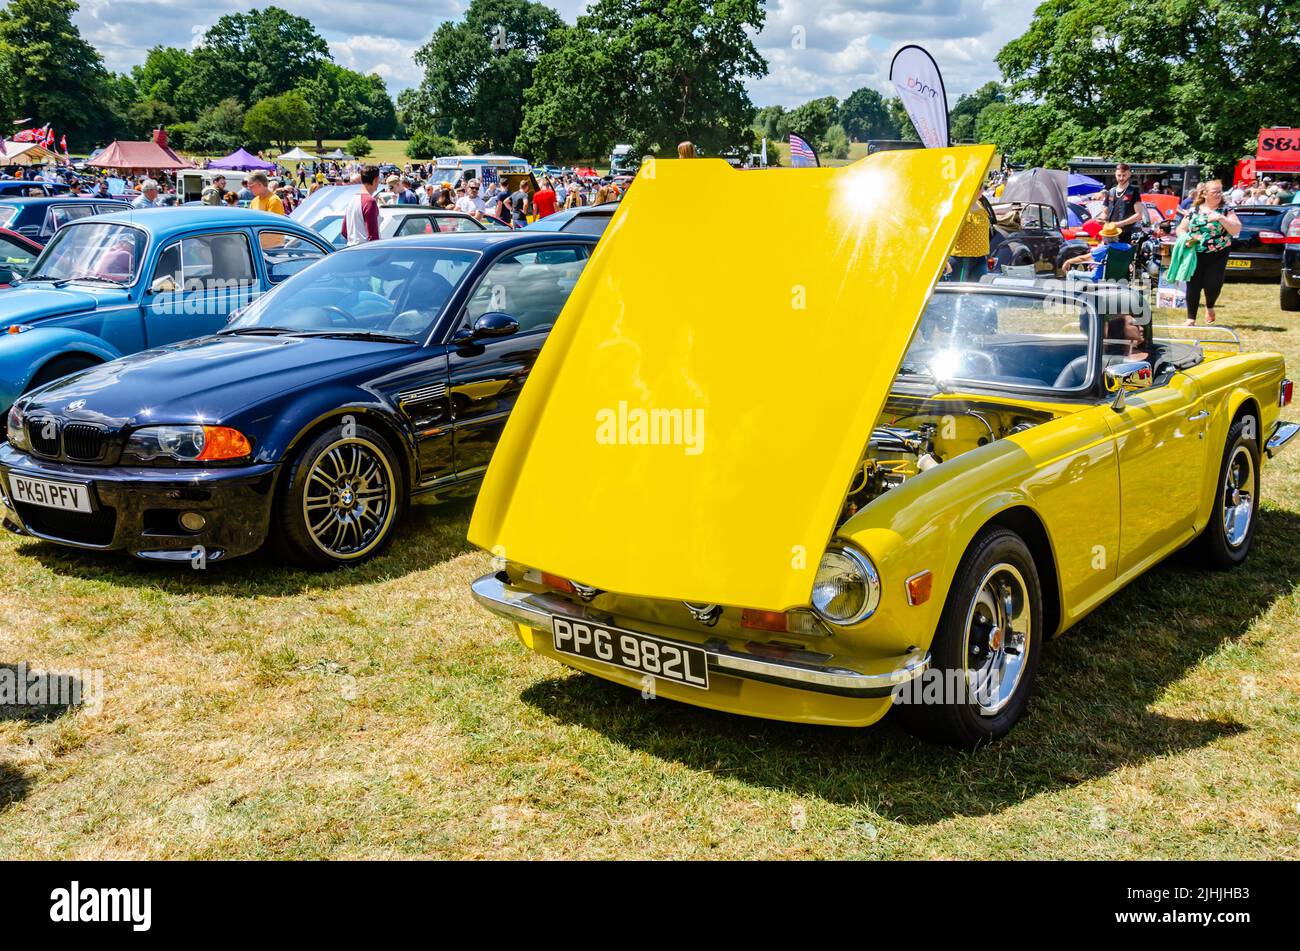 El Berkshire Motor Show, un evento gratuito en Prospect Park en Reading, Reino Unido, en el que se muestran coches nuevos y antiguos. Foto de stock